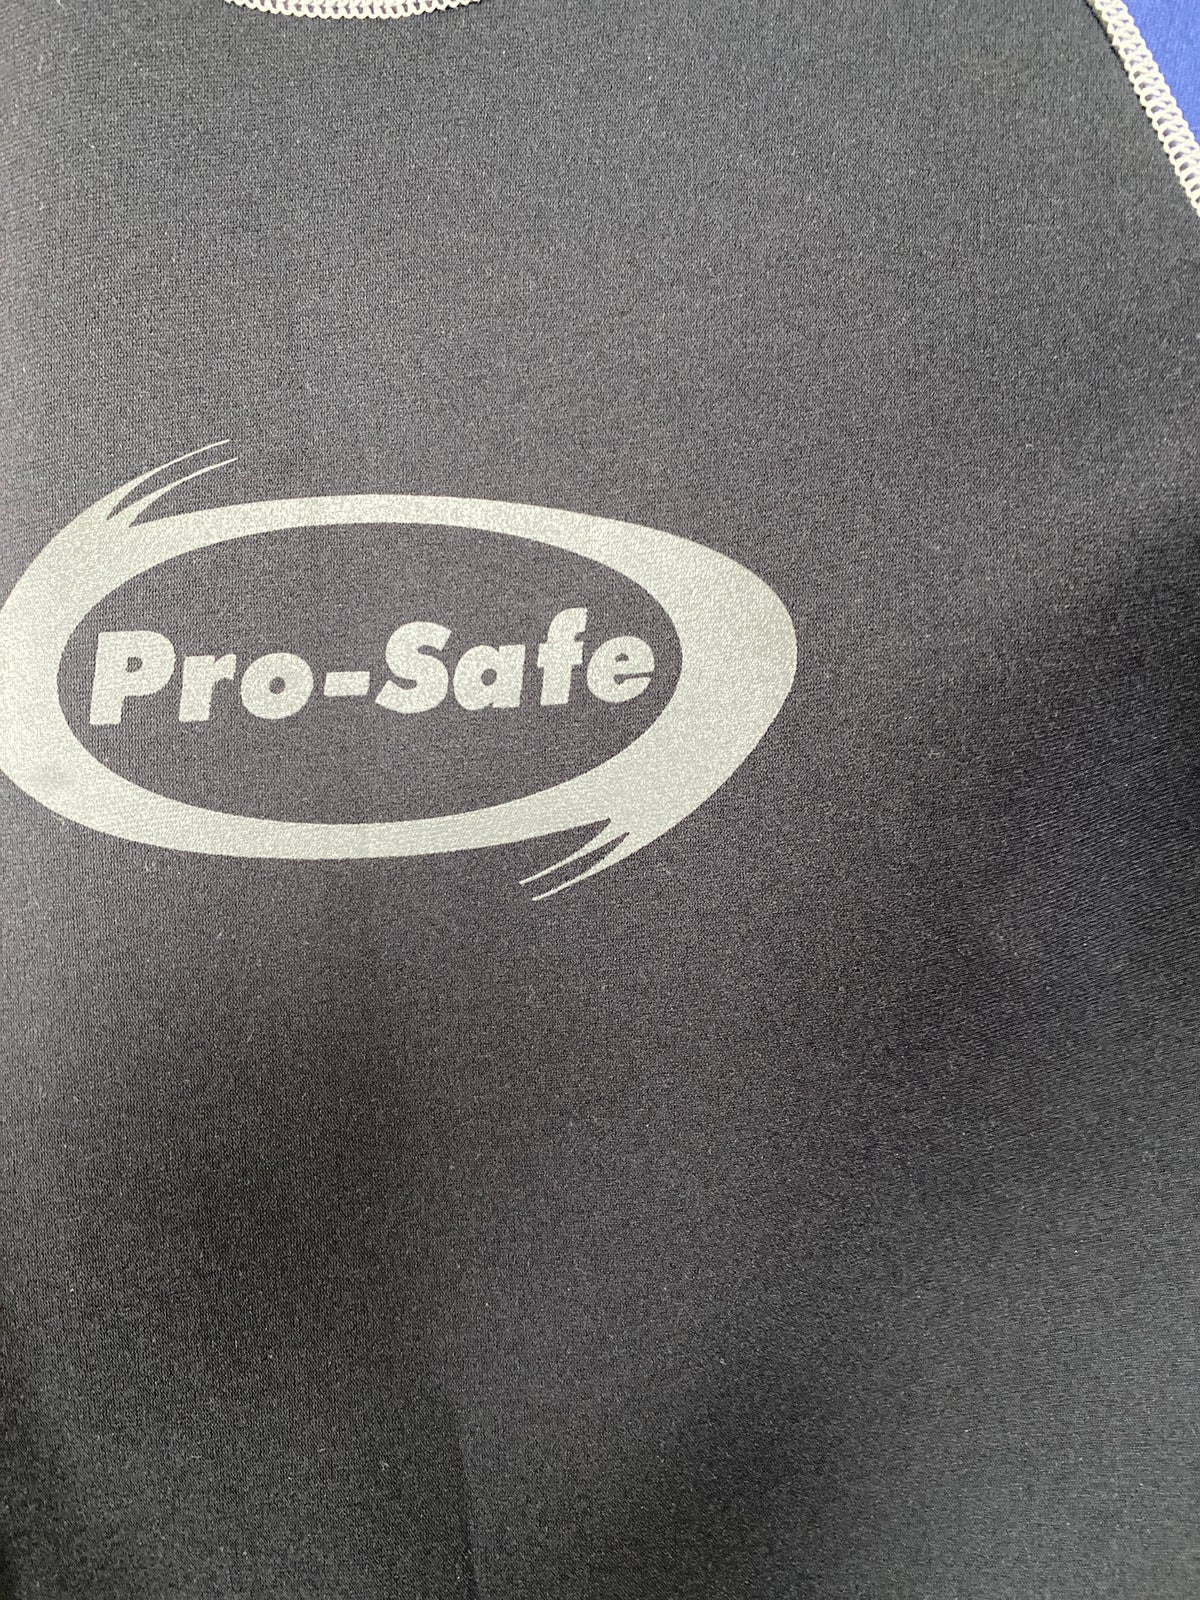 Våddragt, Pro-safe Kort, str. S